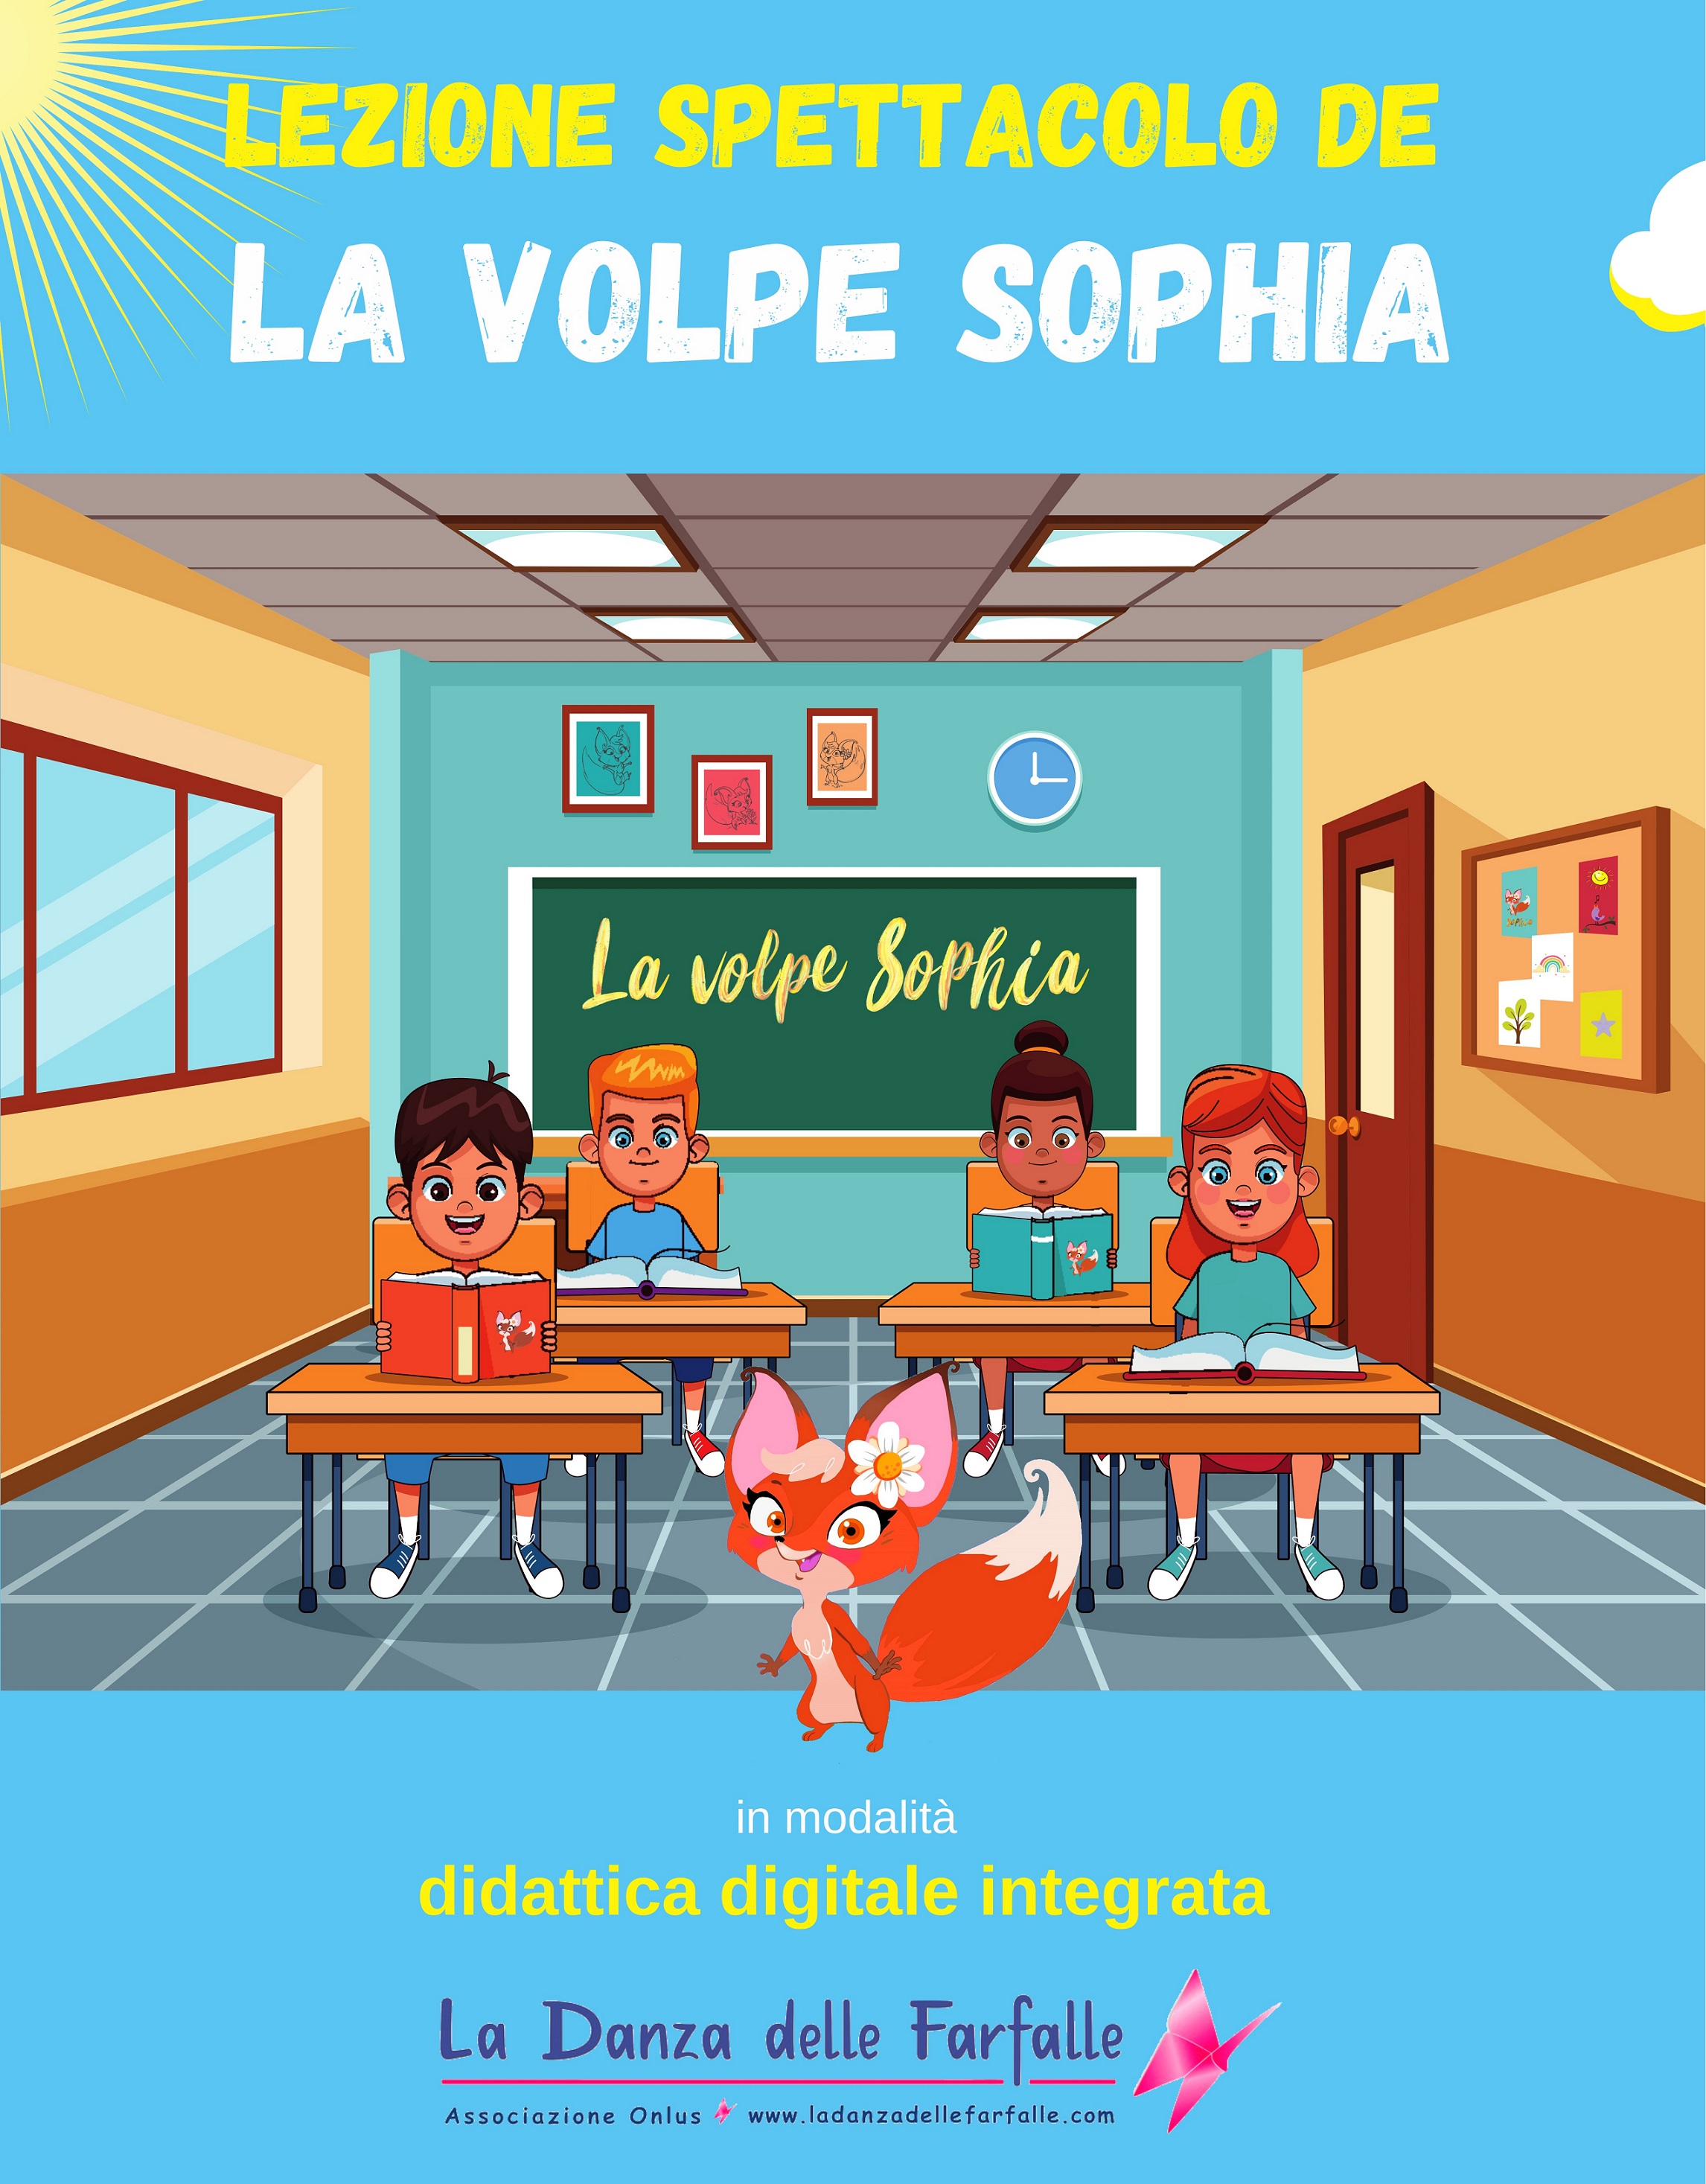 Lezione spettacolo de La volpe Sophia in modalità DDI La Danza delle Farfalle Ass soc sito